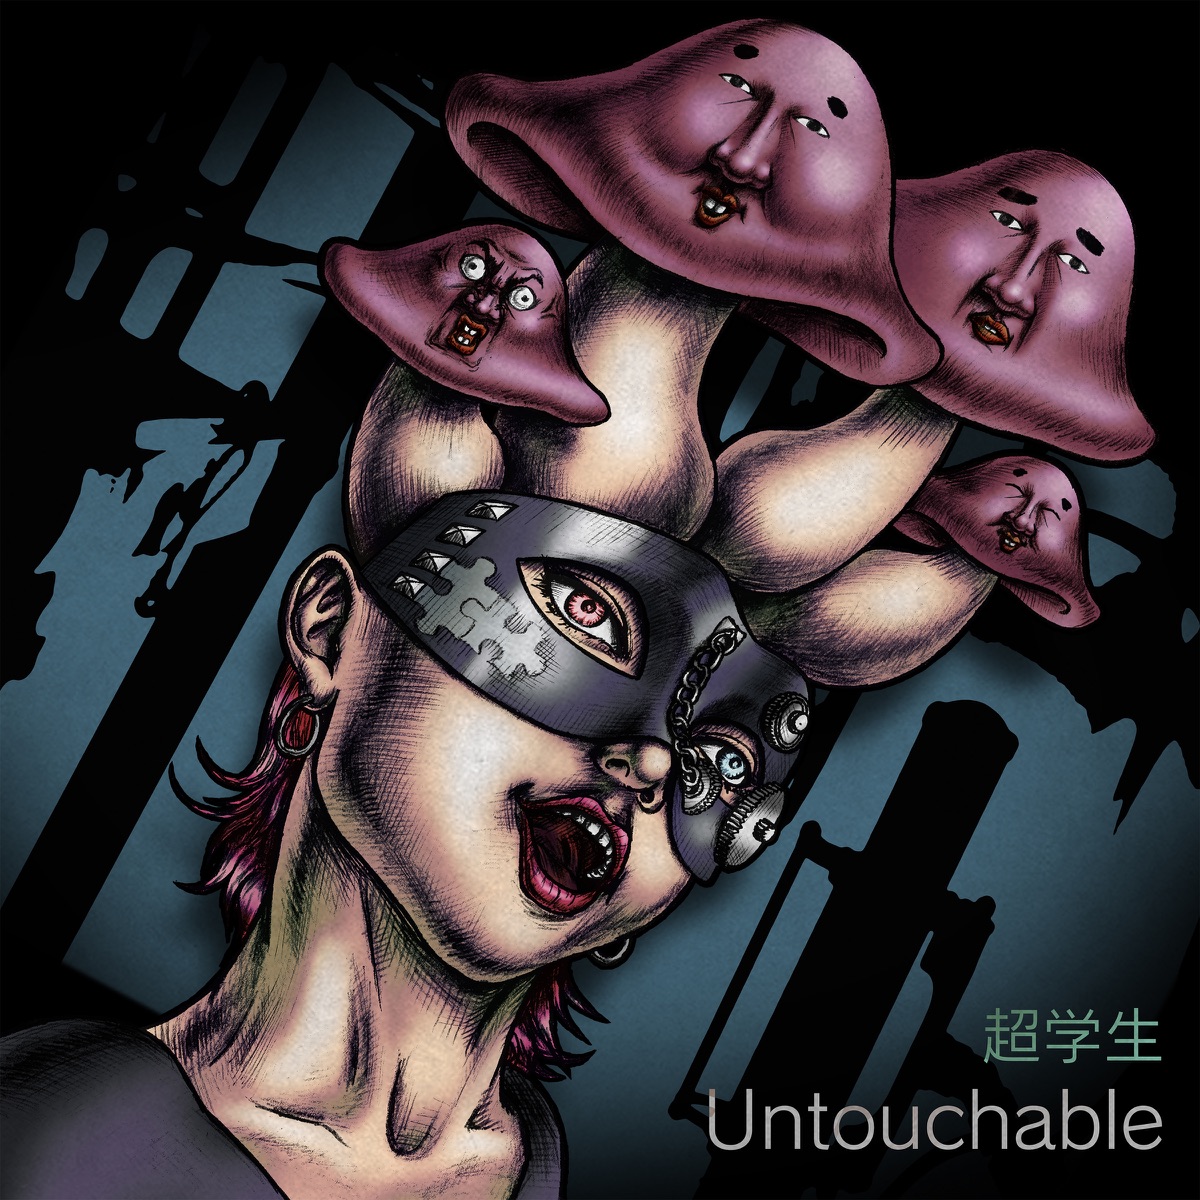 『超学生 - Untouchable』収録の『Untouchable』ジャケット